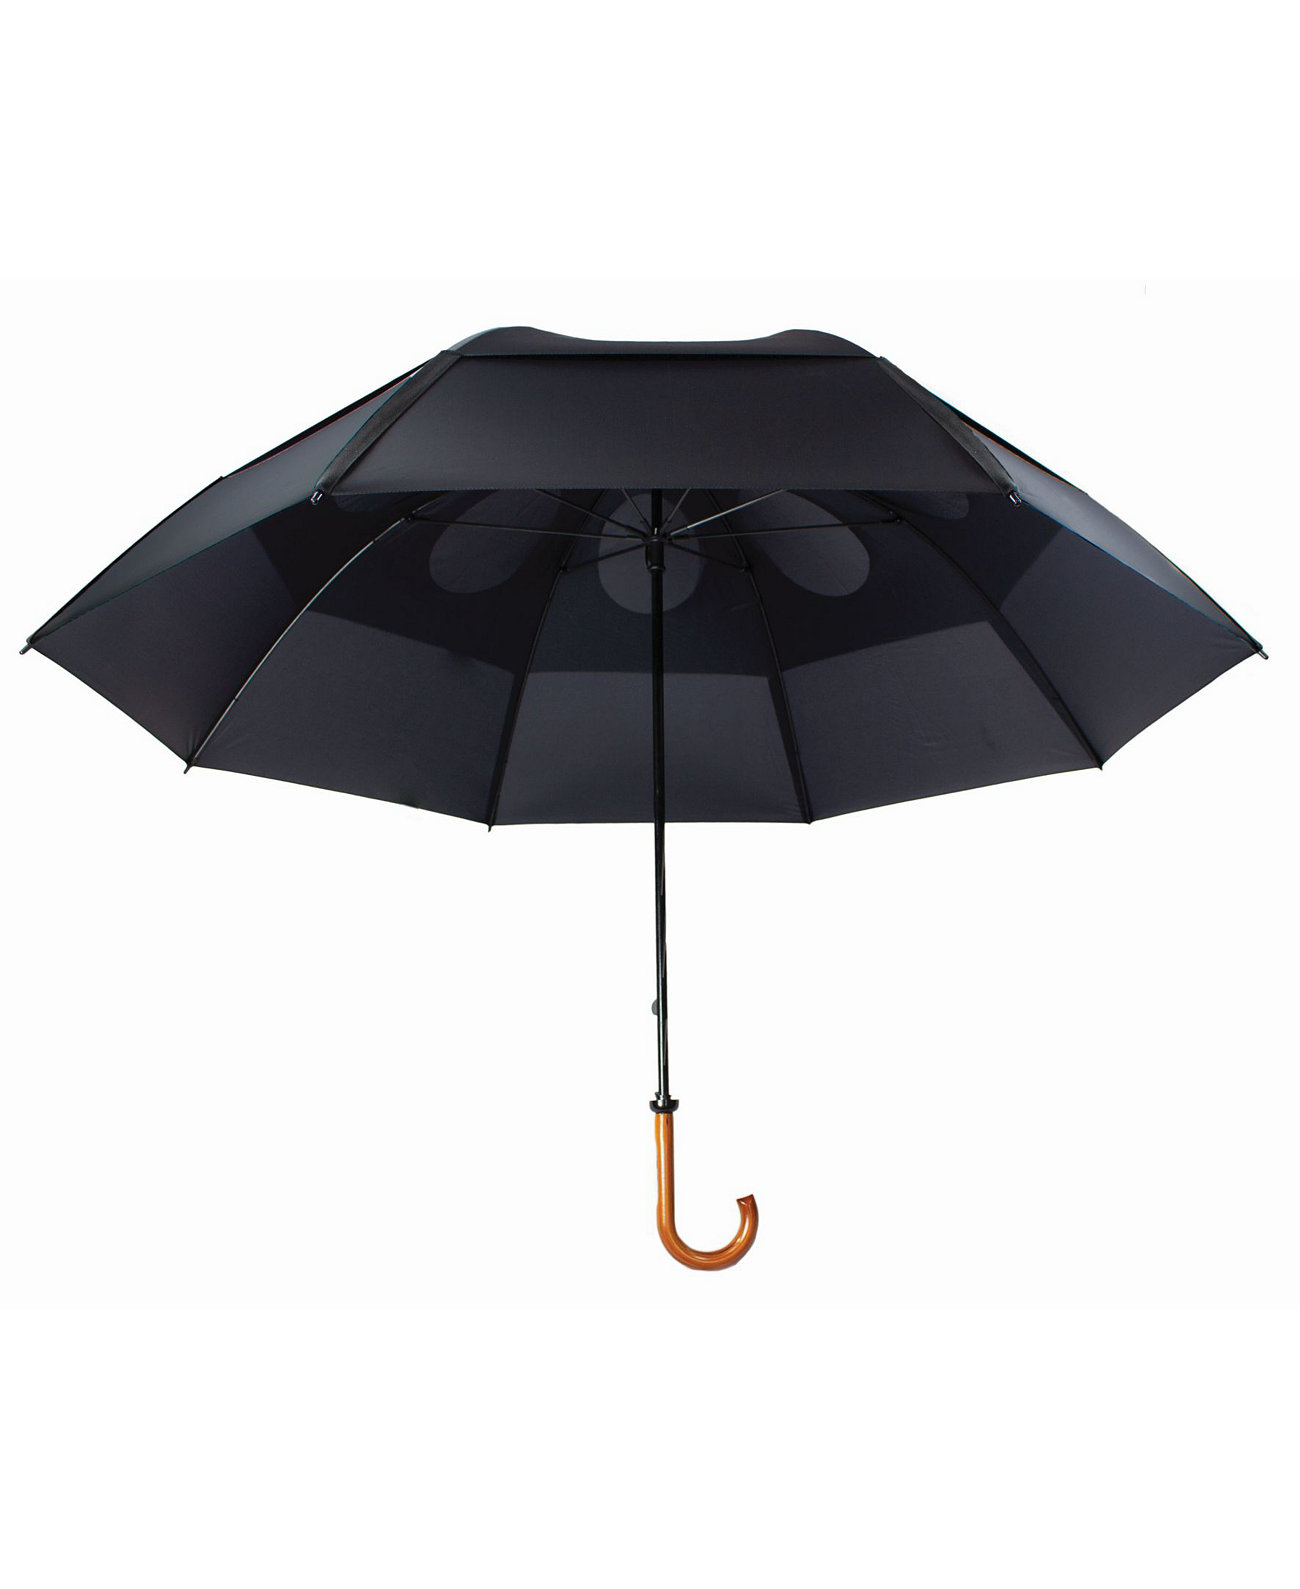 Элегантный роскошный зонт с защитой от ветра и двойным навесом GUSTBUSTER